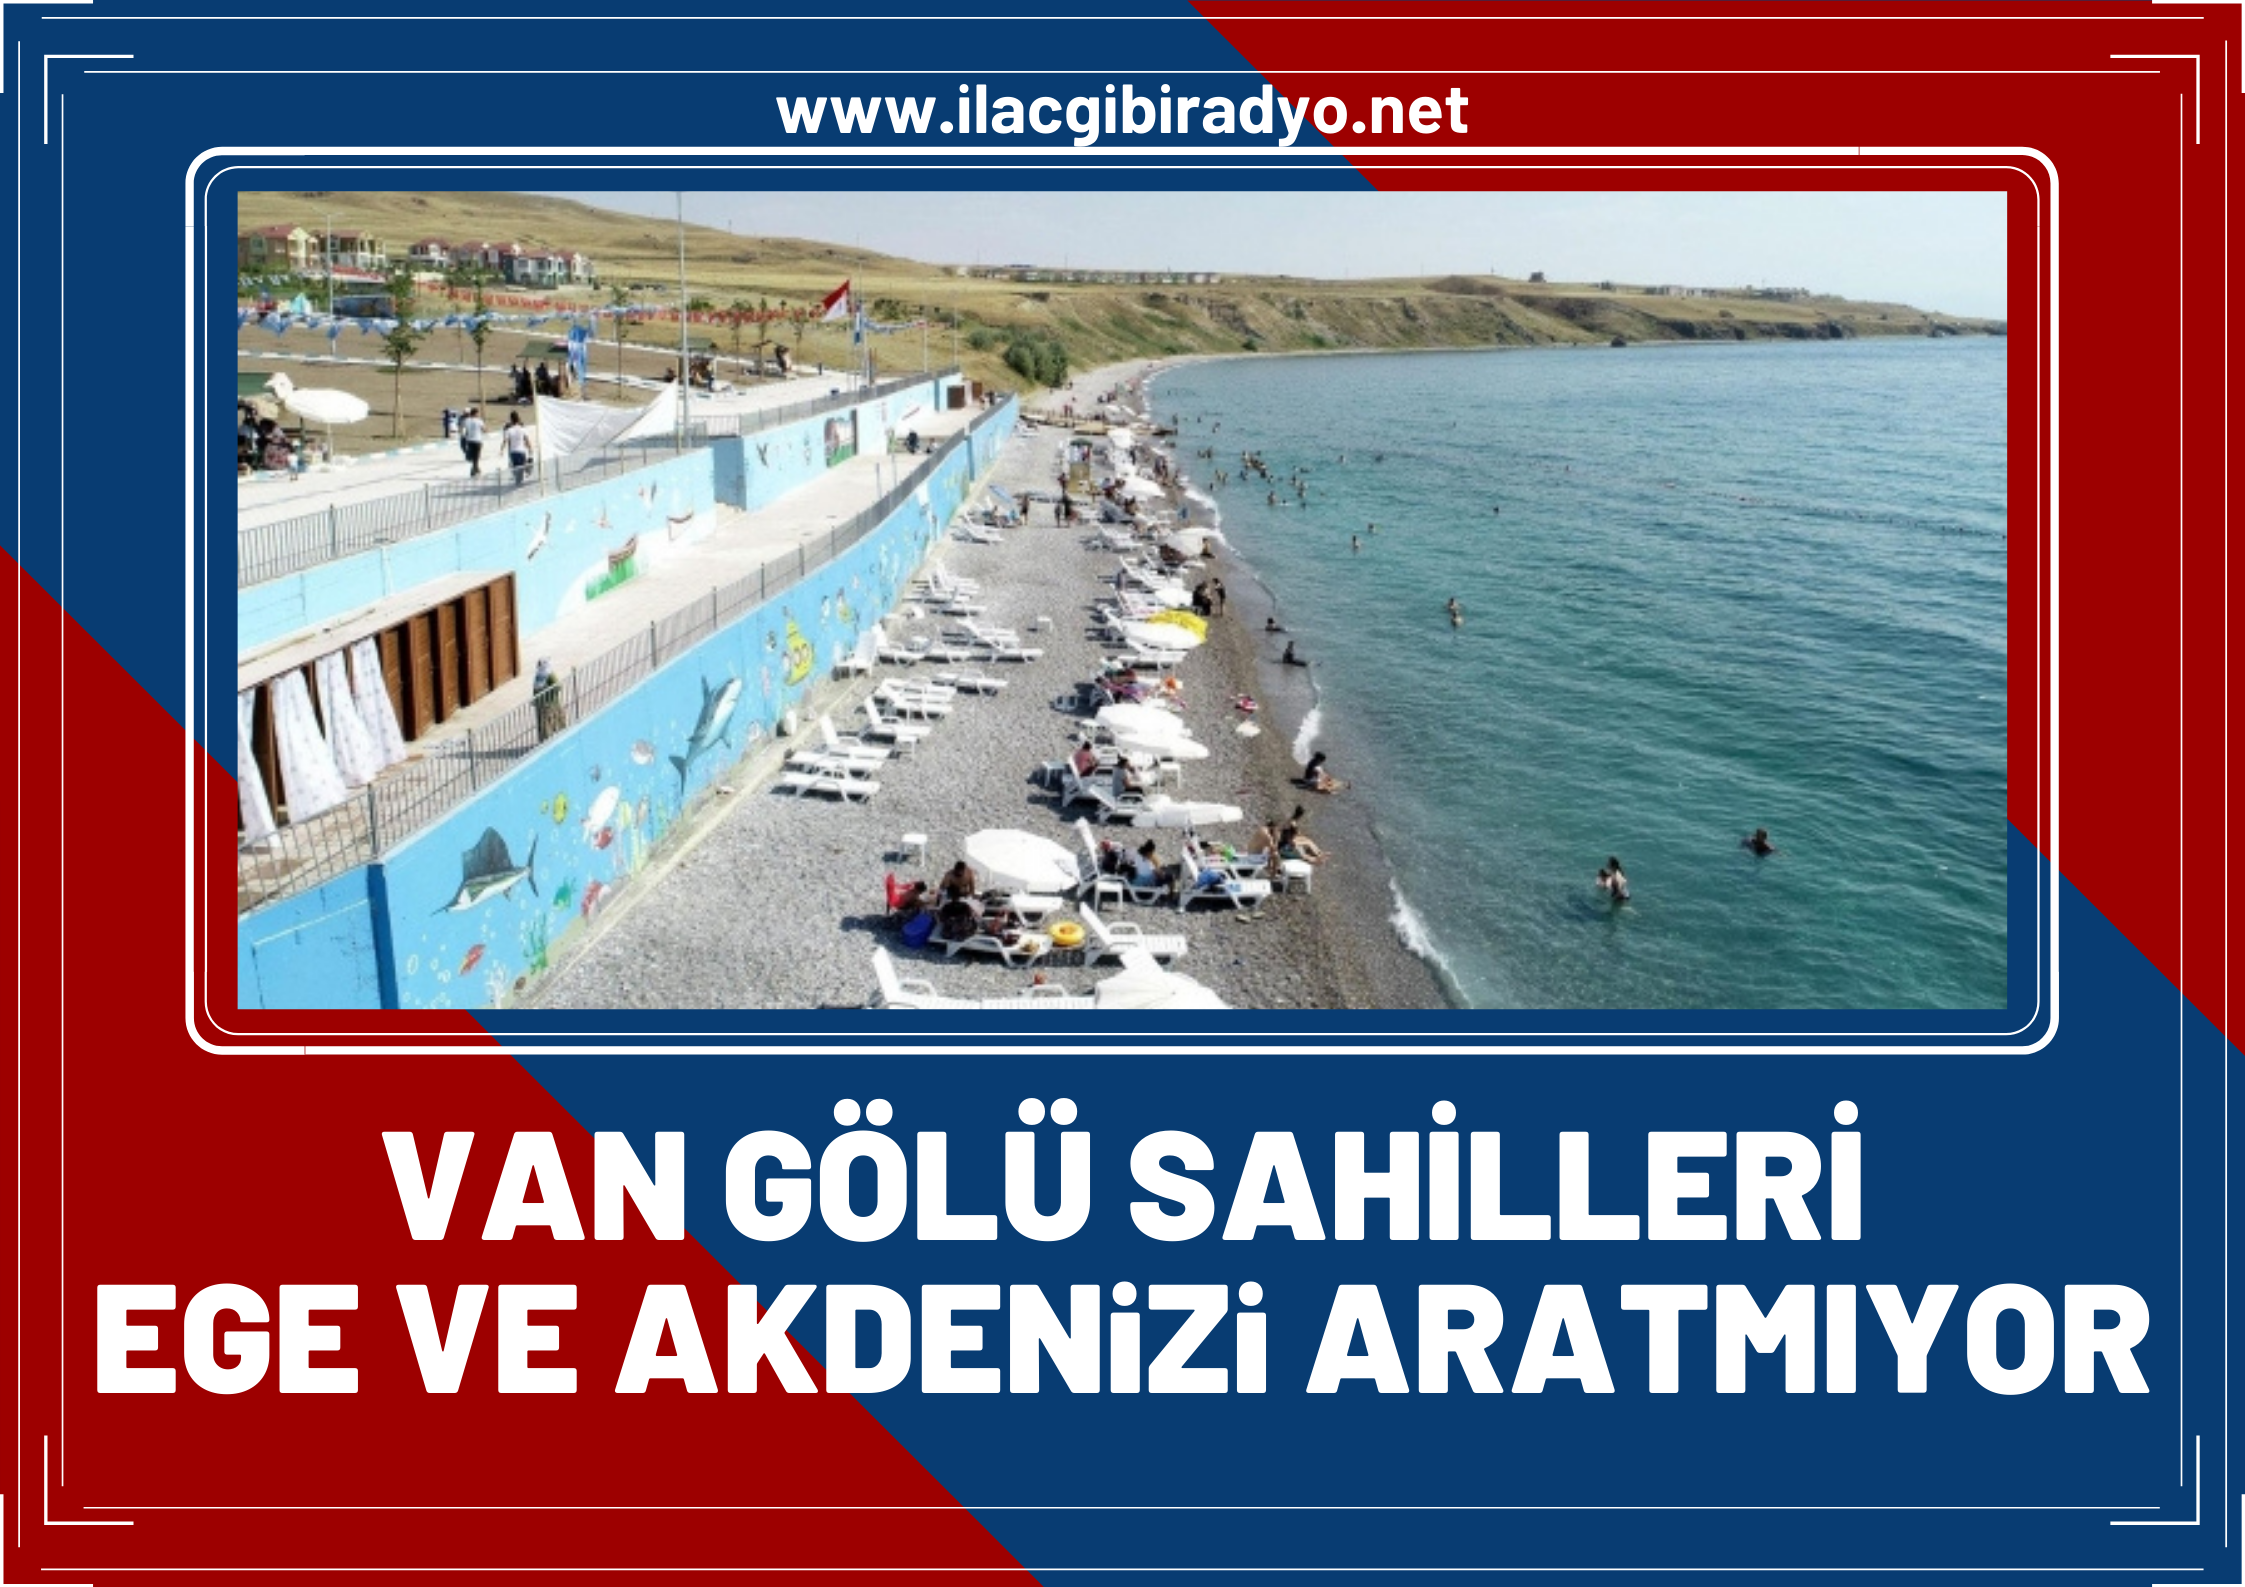 Türkiye’nin ilk ve tek mavi bayraklı Van Gölü sahillerinde ki yoğunluk Ege ve Akdeniz'i aratmadı!